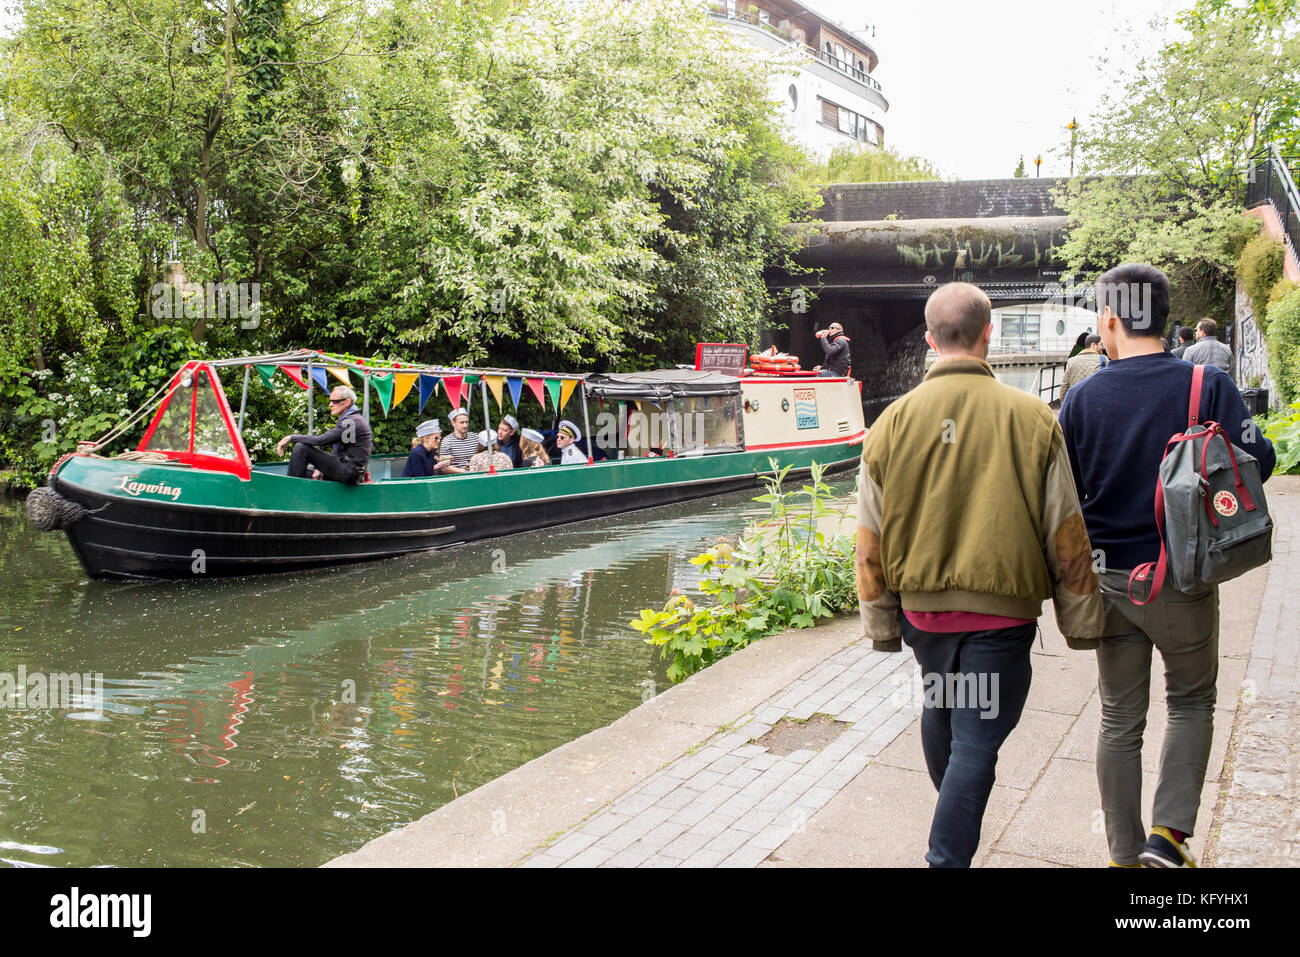 Narrowboat o barcaza pasando sobre el Regents Canal con gente caminando en el camino de sirga canalside cerca de la ciudad de Camden, Londres, Inglaterra, Reino Unido. Foto de stock